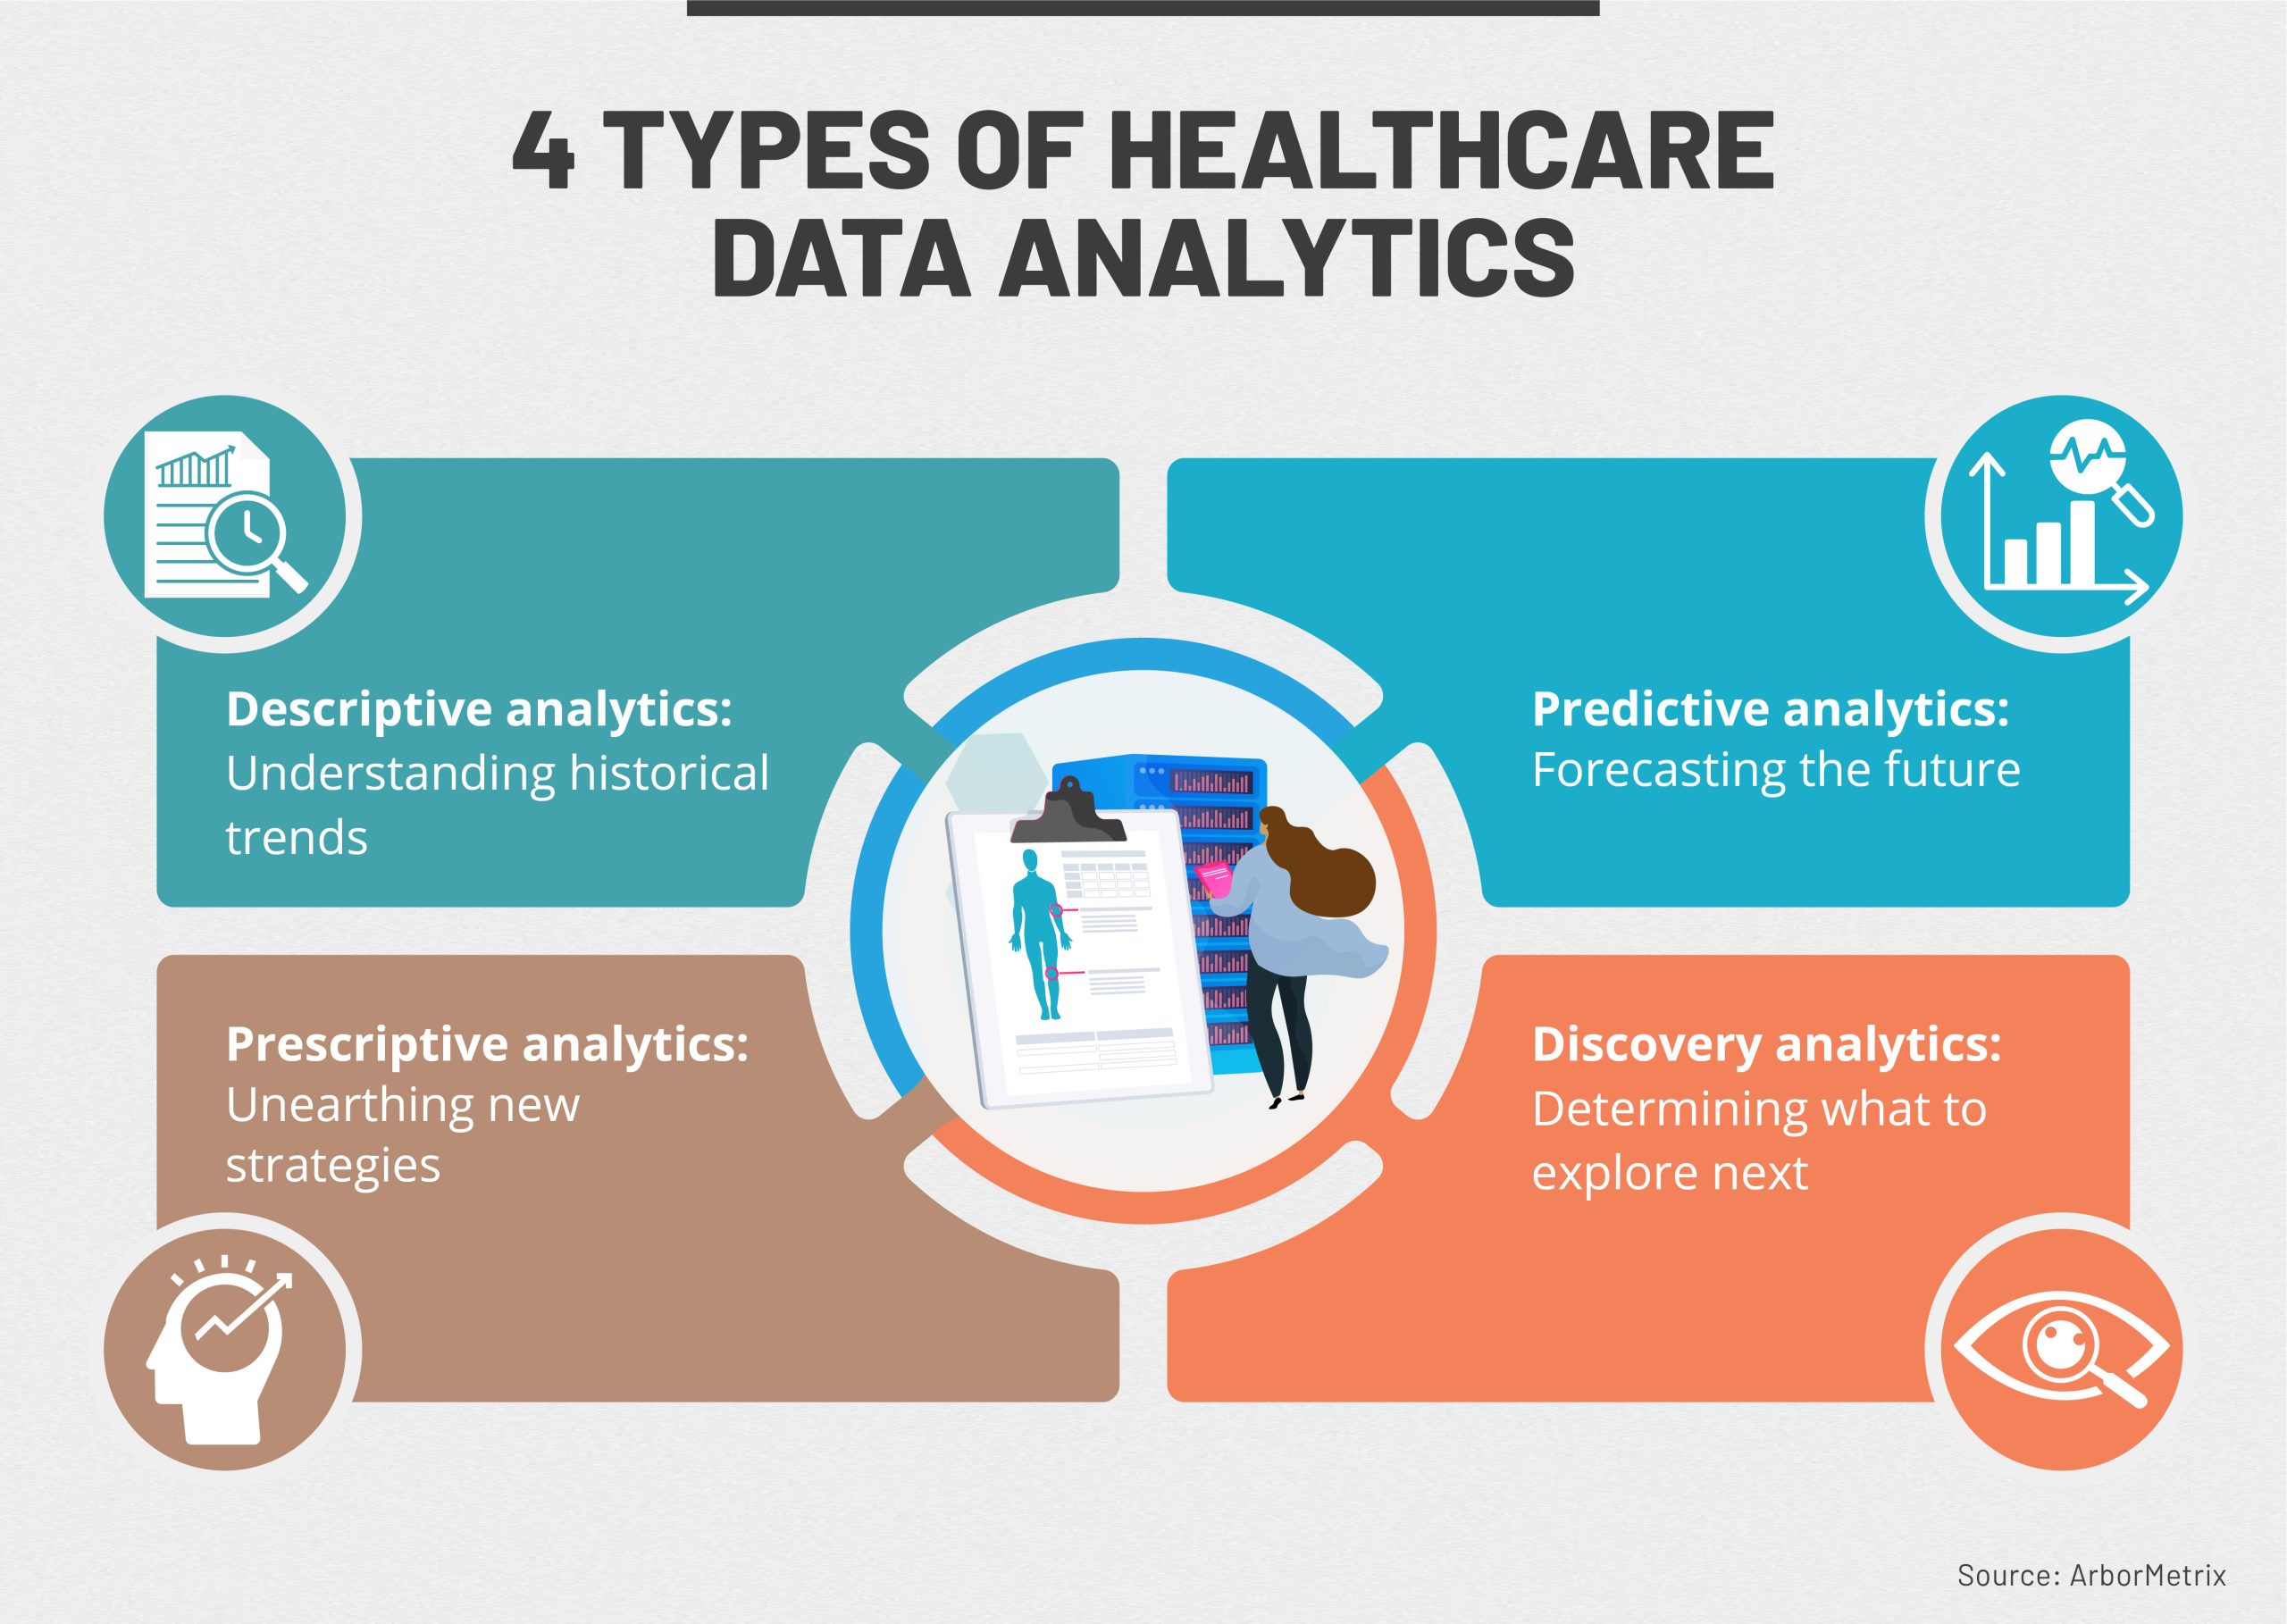 benefits of data analytics